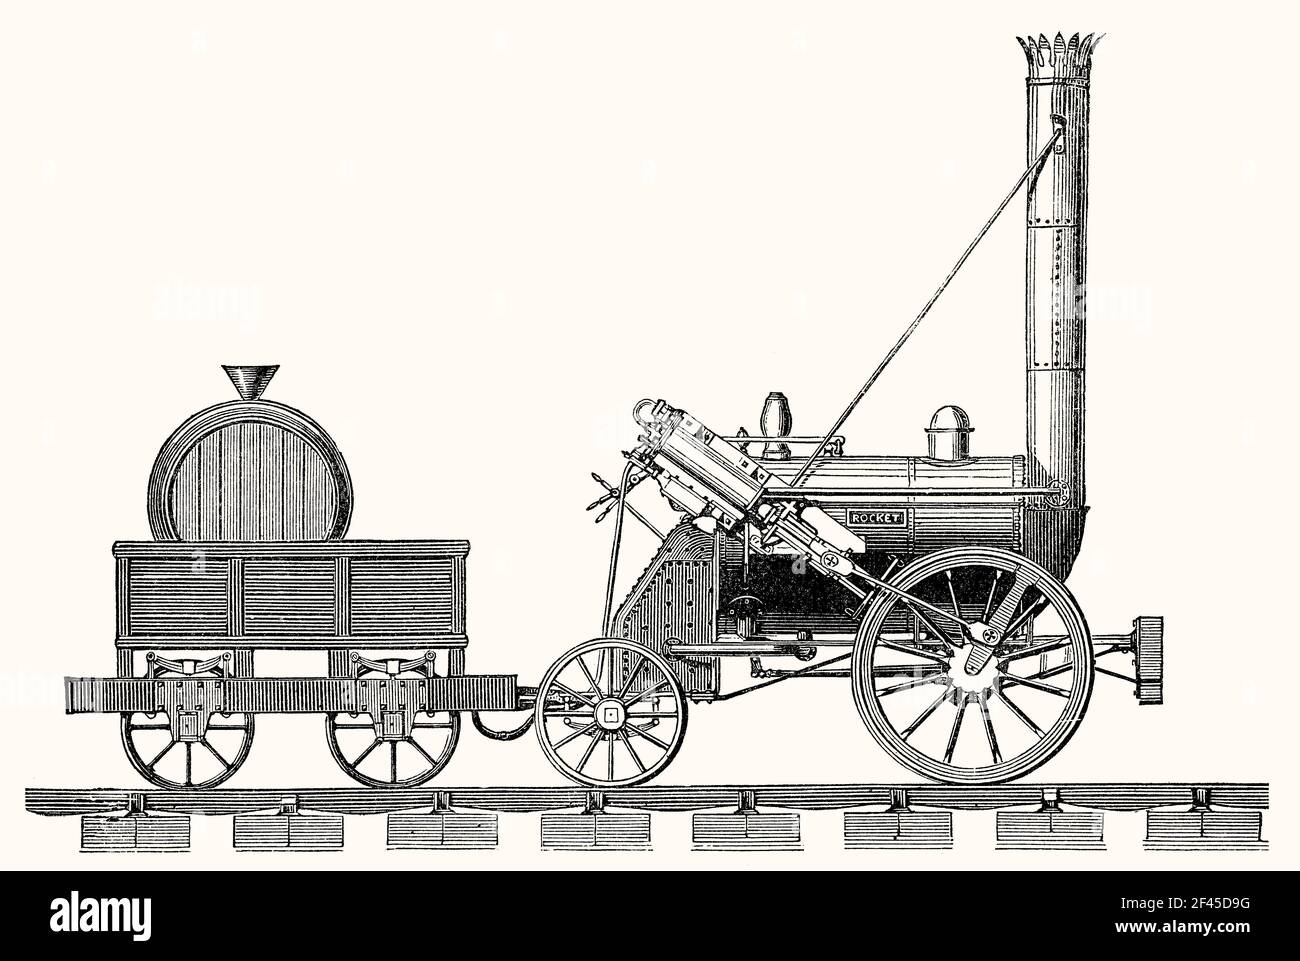 Stephenson's Rocket, eine frühe Dampflokomotive, Liverpool und Manchester Railway, Oktober 1829 Stockfoto